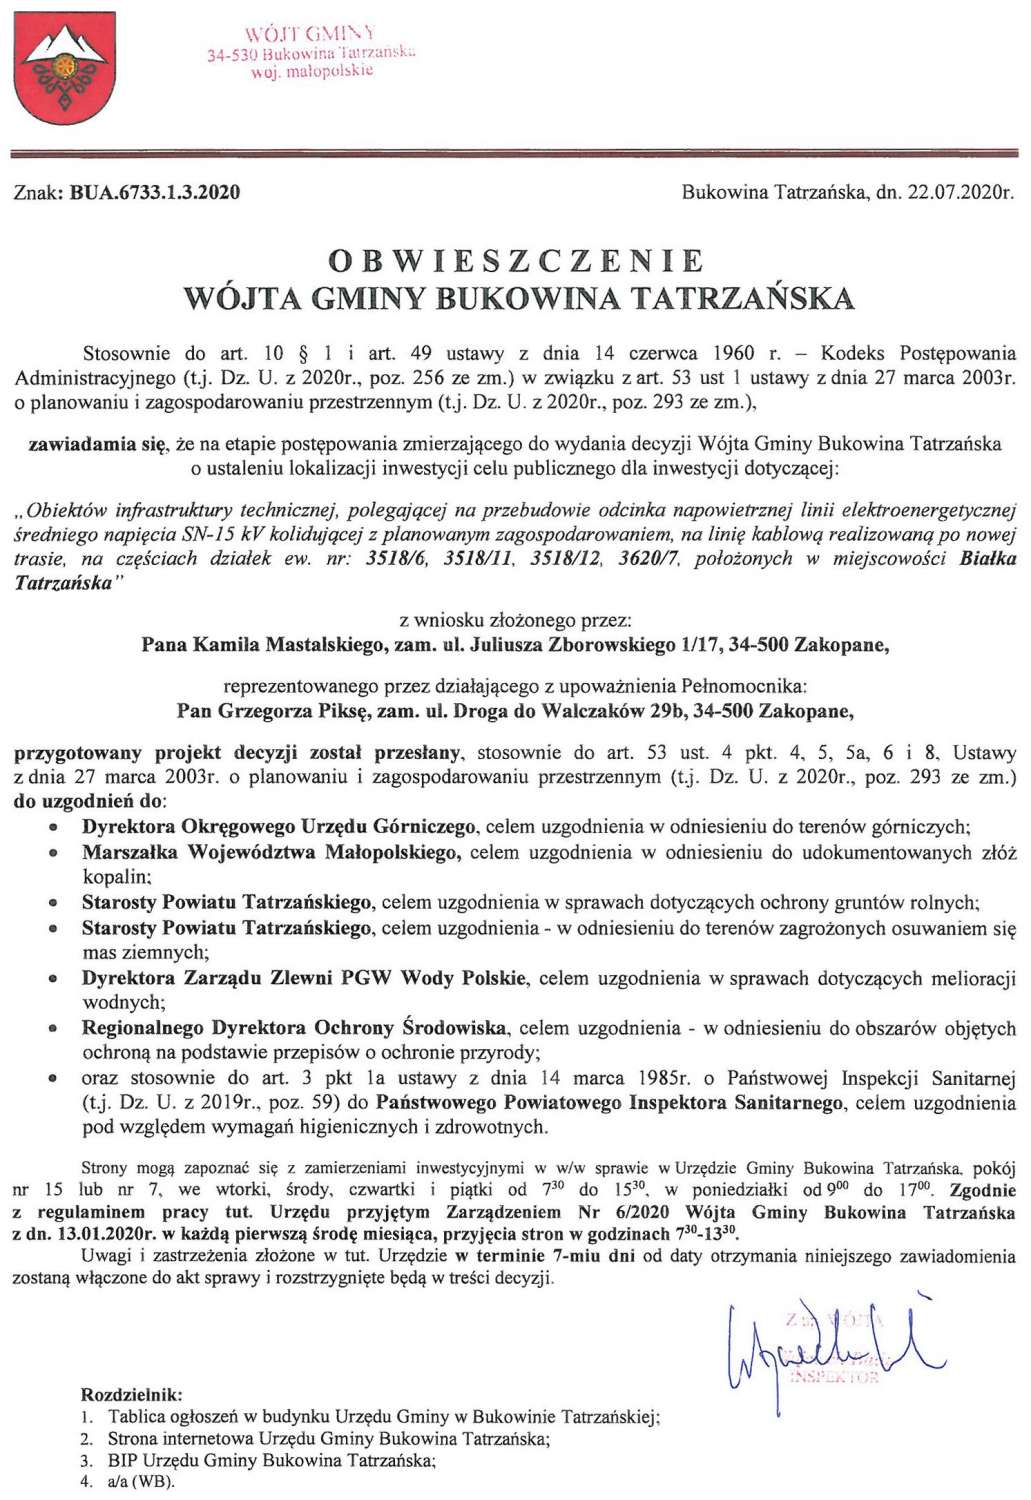 Obwieszczenie Wójta Gminy Bukowina Tatrzańska BUA 6733.1.3.2020